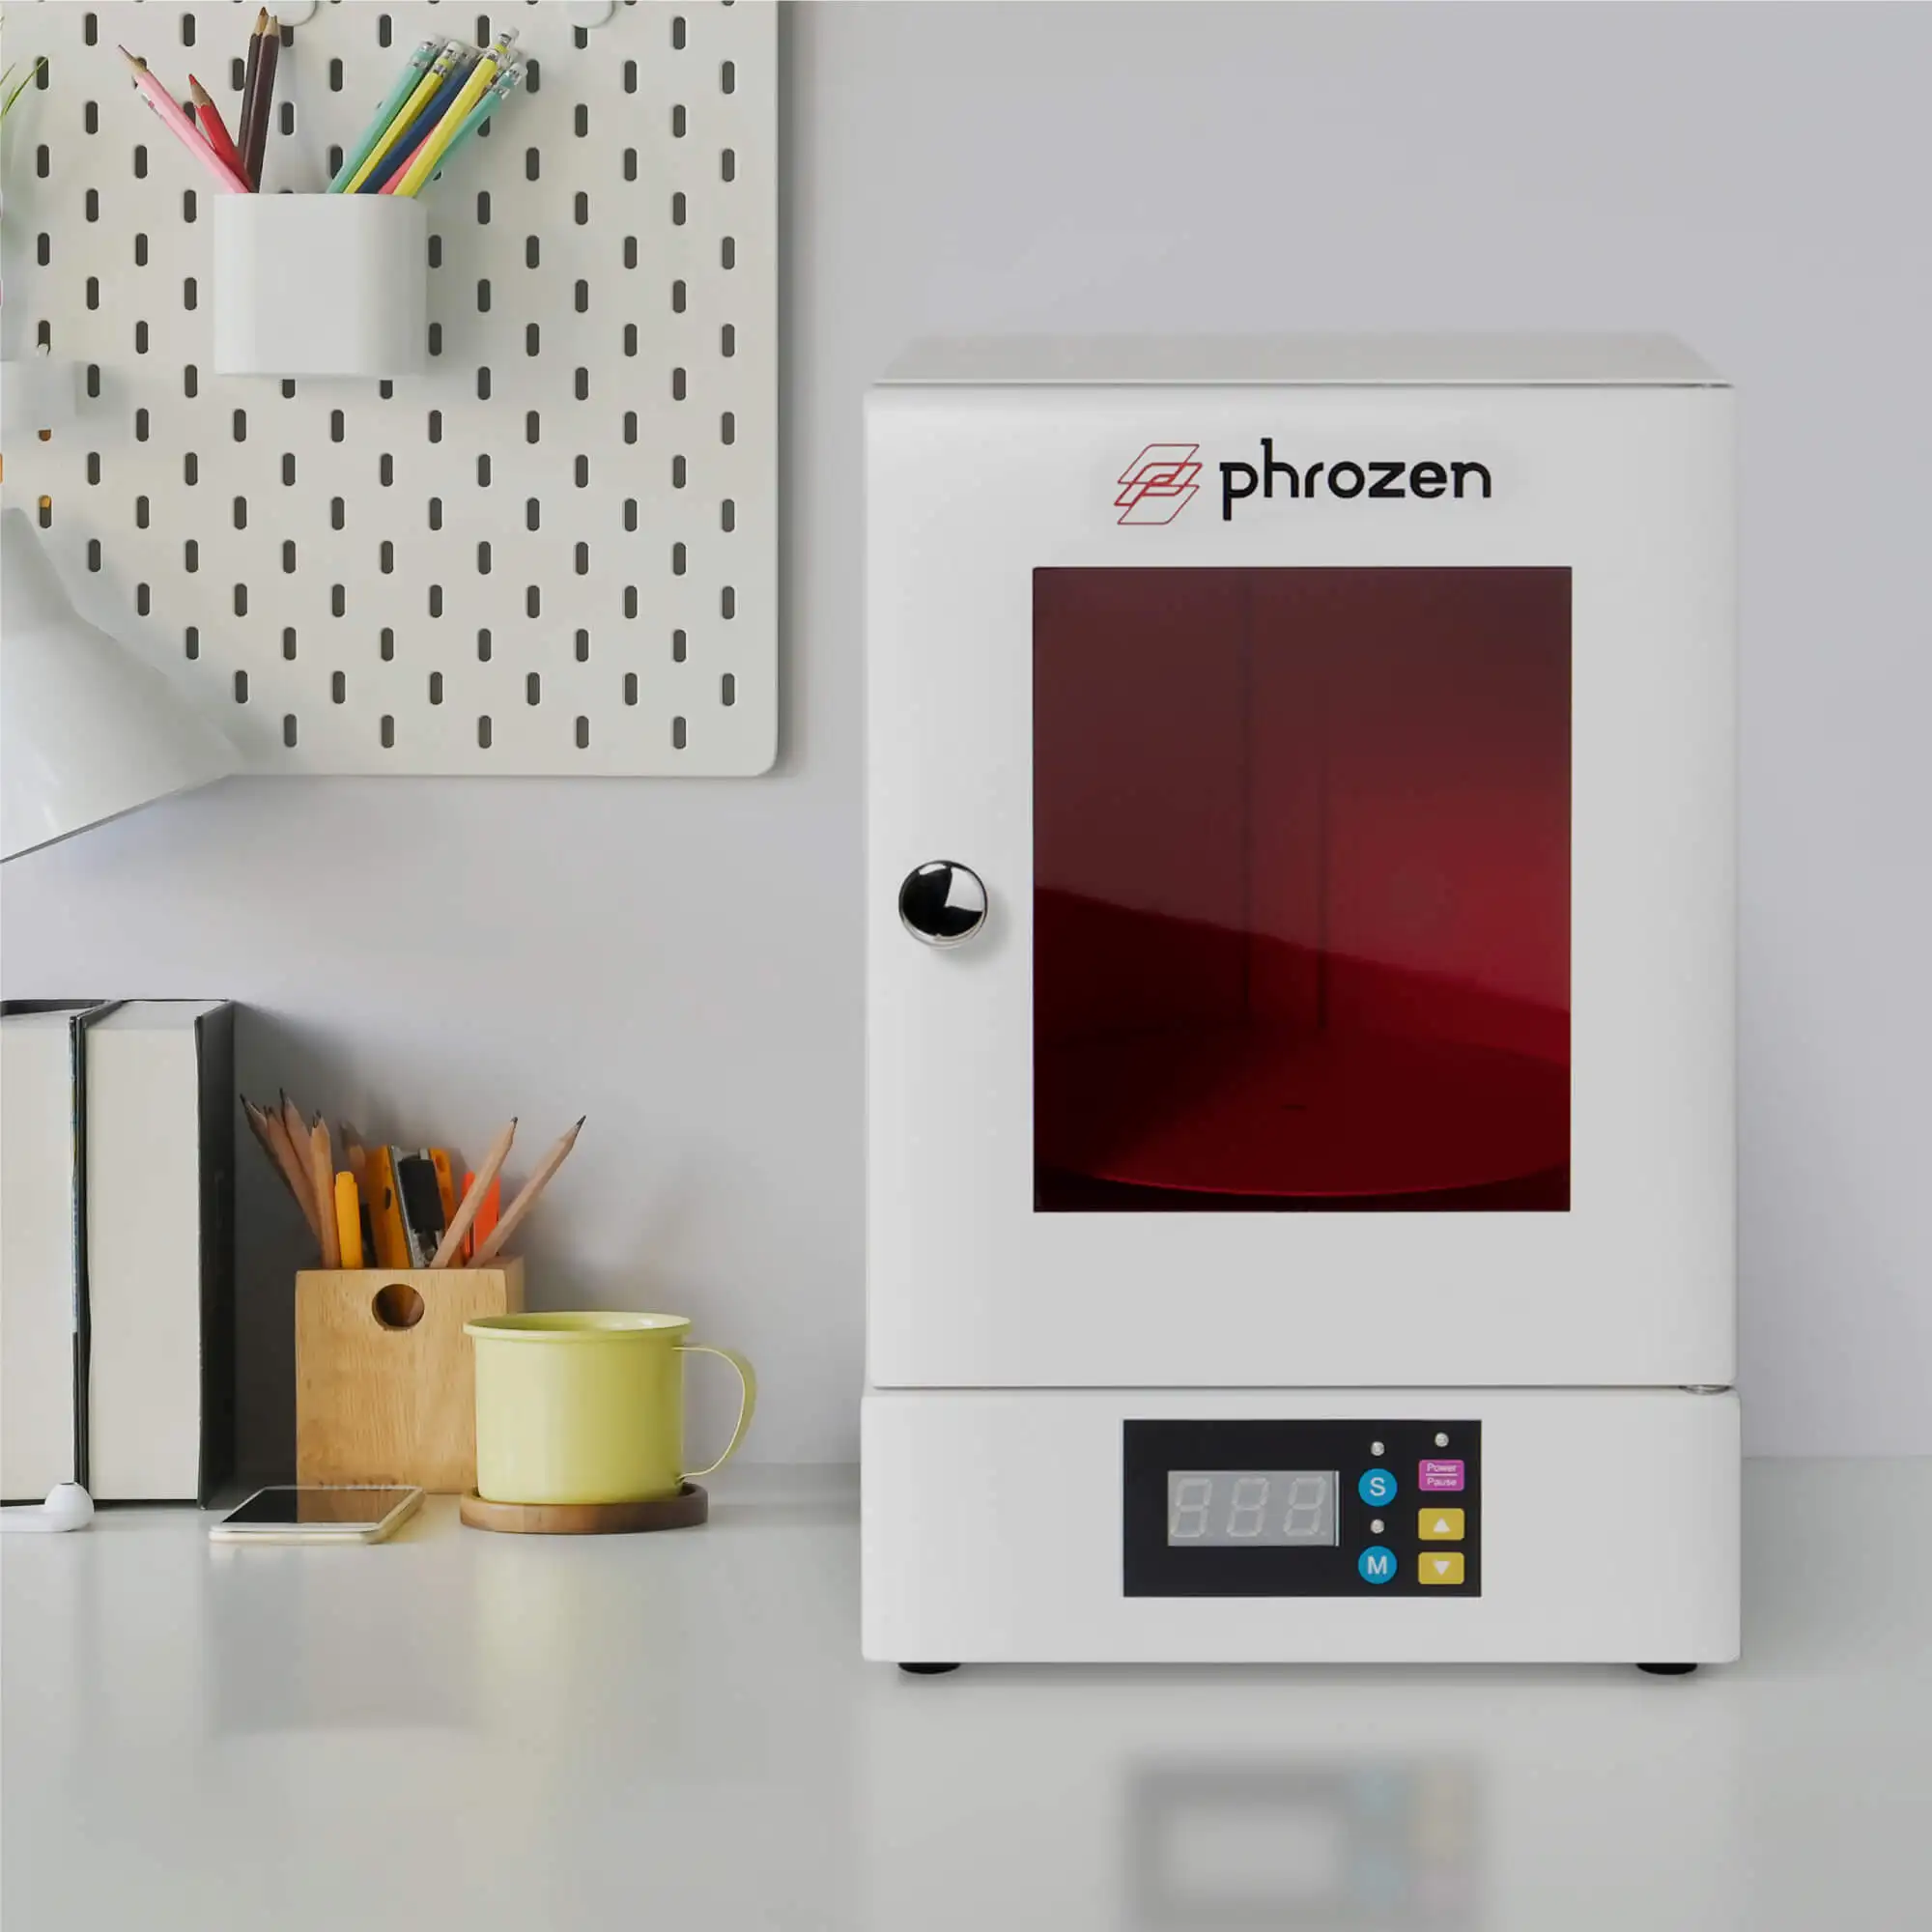 Phrozen - Phrozen Cure: Post Curing UV Lamp - Accessories for 3d printer